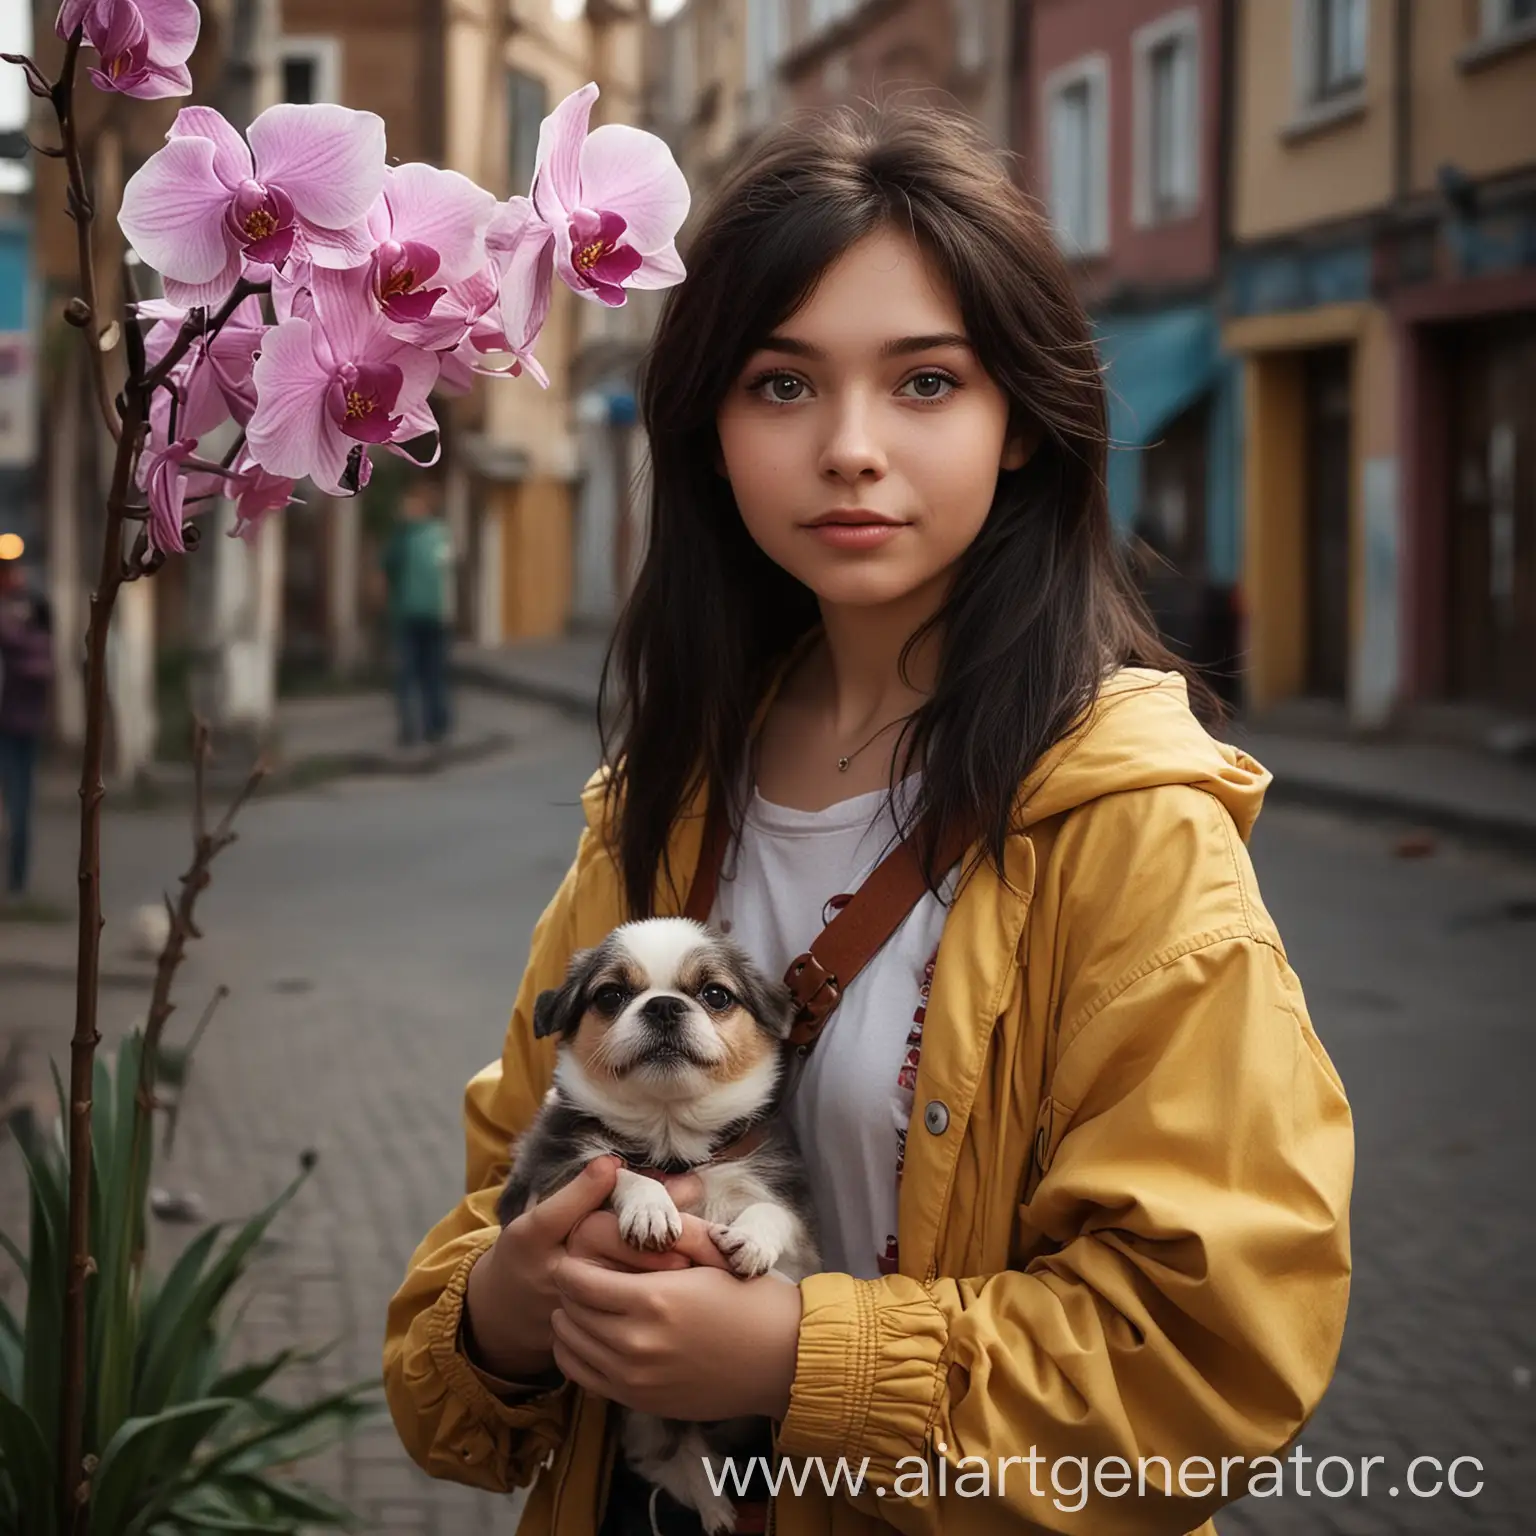 Нарисуй в стиле Дисней образ фотографа в архетипе славный малый, девушк 24 лет, живет в городе Тюмень, занимается фотографиями 10 лет, с темным цветом волос, любит собак и орхидеи